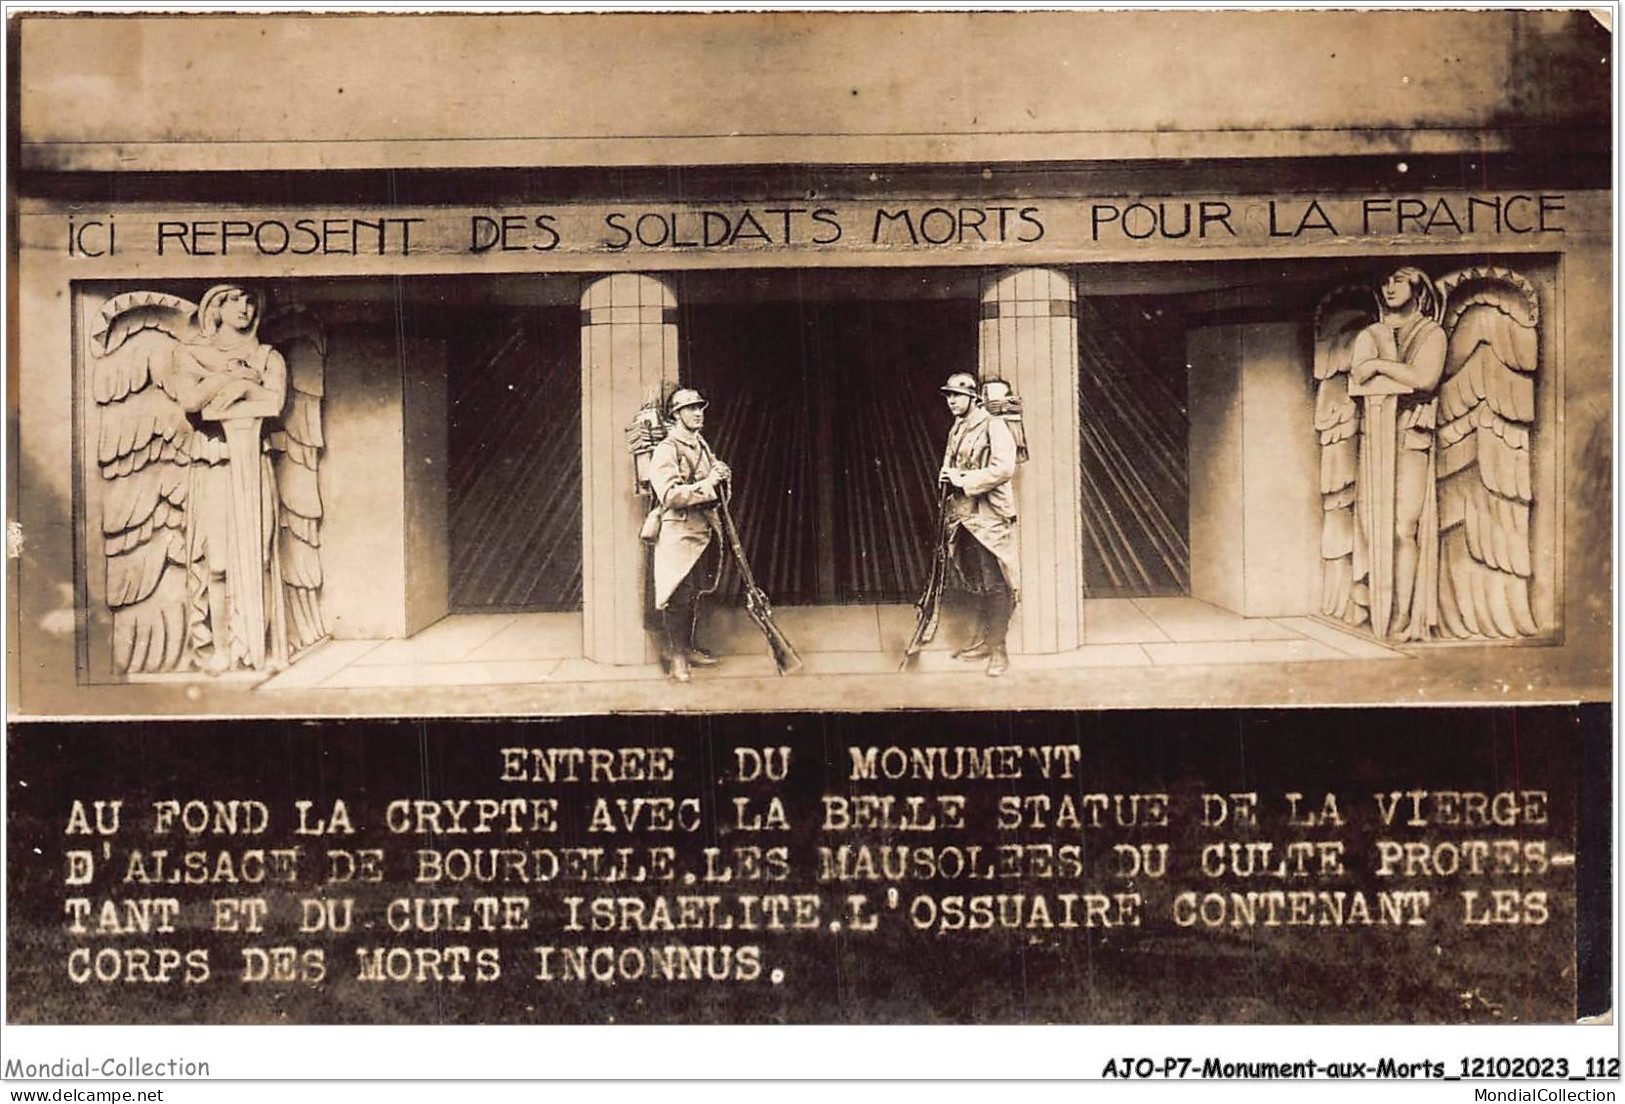 AJOP7-0704 - MONUMENT-AUX-MORTS - Ici Reposent Des Soldats Morts Pour La France -CULTE ISRAELITE JUDAICA JUIF RELIGION - Monuments Aux Morts